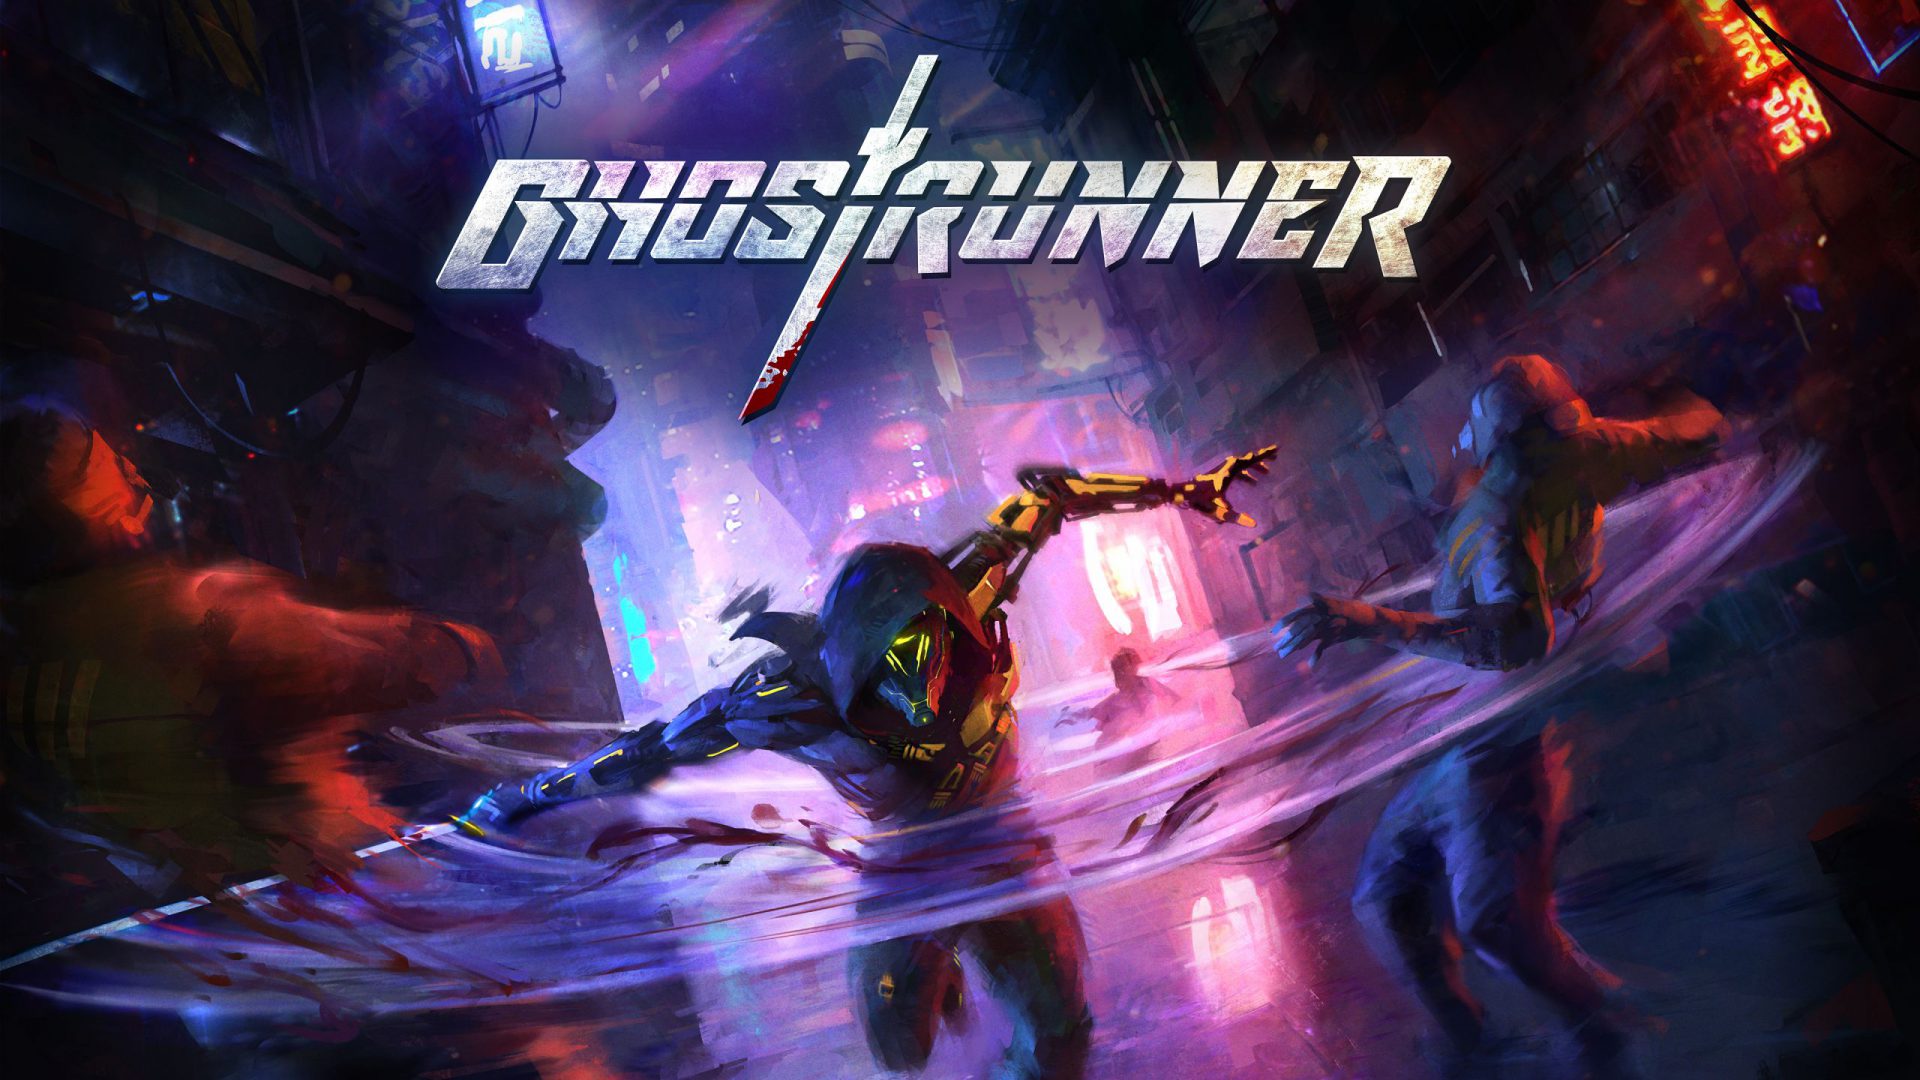 ghostrunner price download free